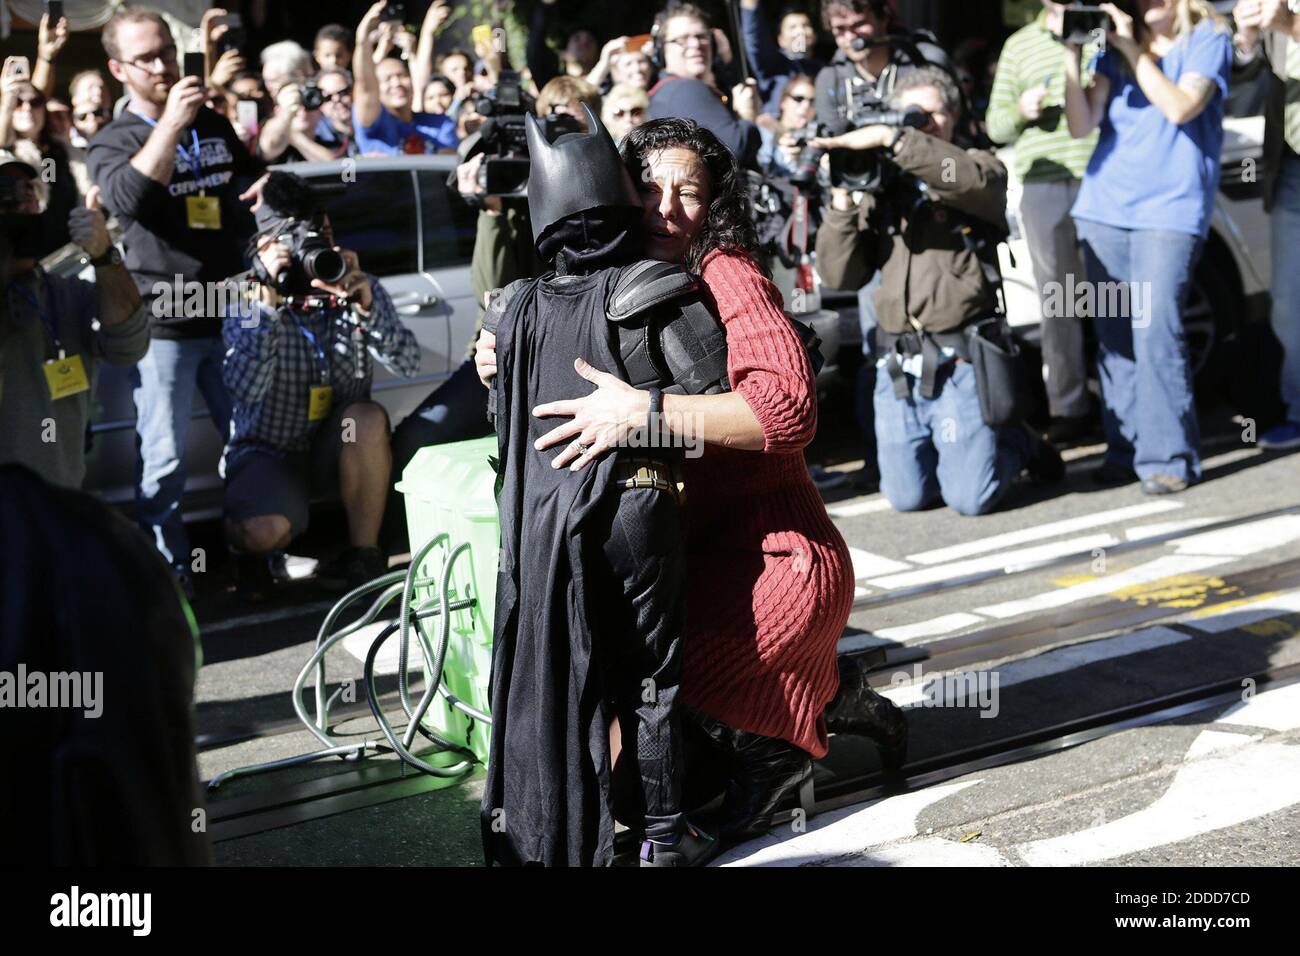 KEIN FILM, KEIN VIDEO, KEIN Fernsehen, KEIN DOKUMENTARFILM - Miles Scott, 5, The Batkid, rettet am 15. November 2013 eine in Not geratene Dame auf der Hyde Street in San Francisco, CA, USA. Miles ist ein Leukämie-Überlebender aus Tulelake in Siskiyou County, Kalifornien. Nachdem er Leukämie bekämpft hat, seit er ein Jahr alt war, ist Miles jetzt in Remission. Einer seiner Helden ist Batman, um das Ende seiner Behandlung zu feiern, hat die Make-A-Wish Greater Bay Area seinen Wunsch erfüllt, Batkid für einen Tag zu werden. Foto von Gary Reyes/Bay Area News Group/MCT/ABACAPRESS.COM Stockfoto